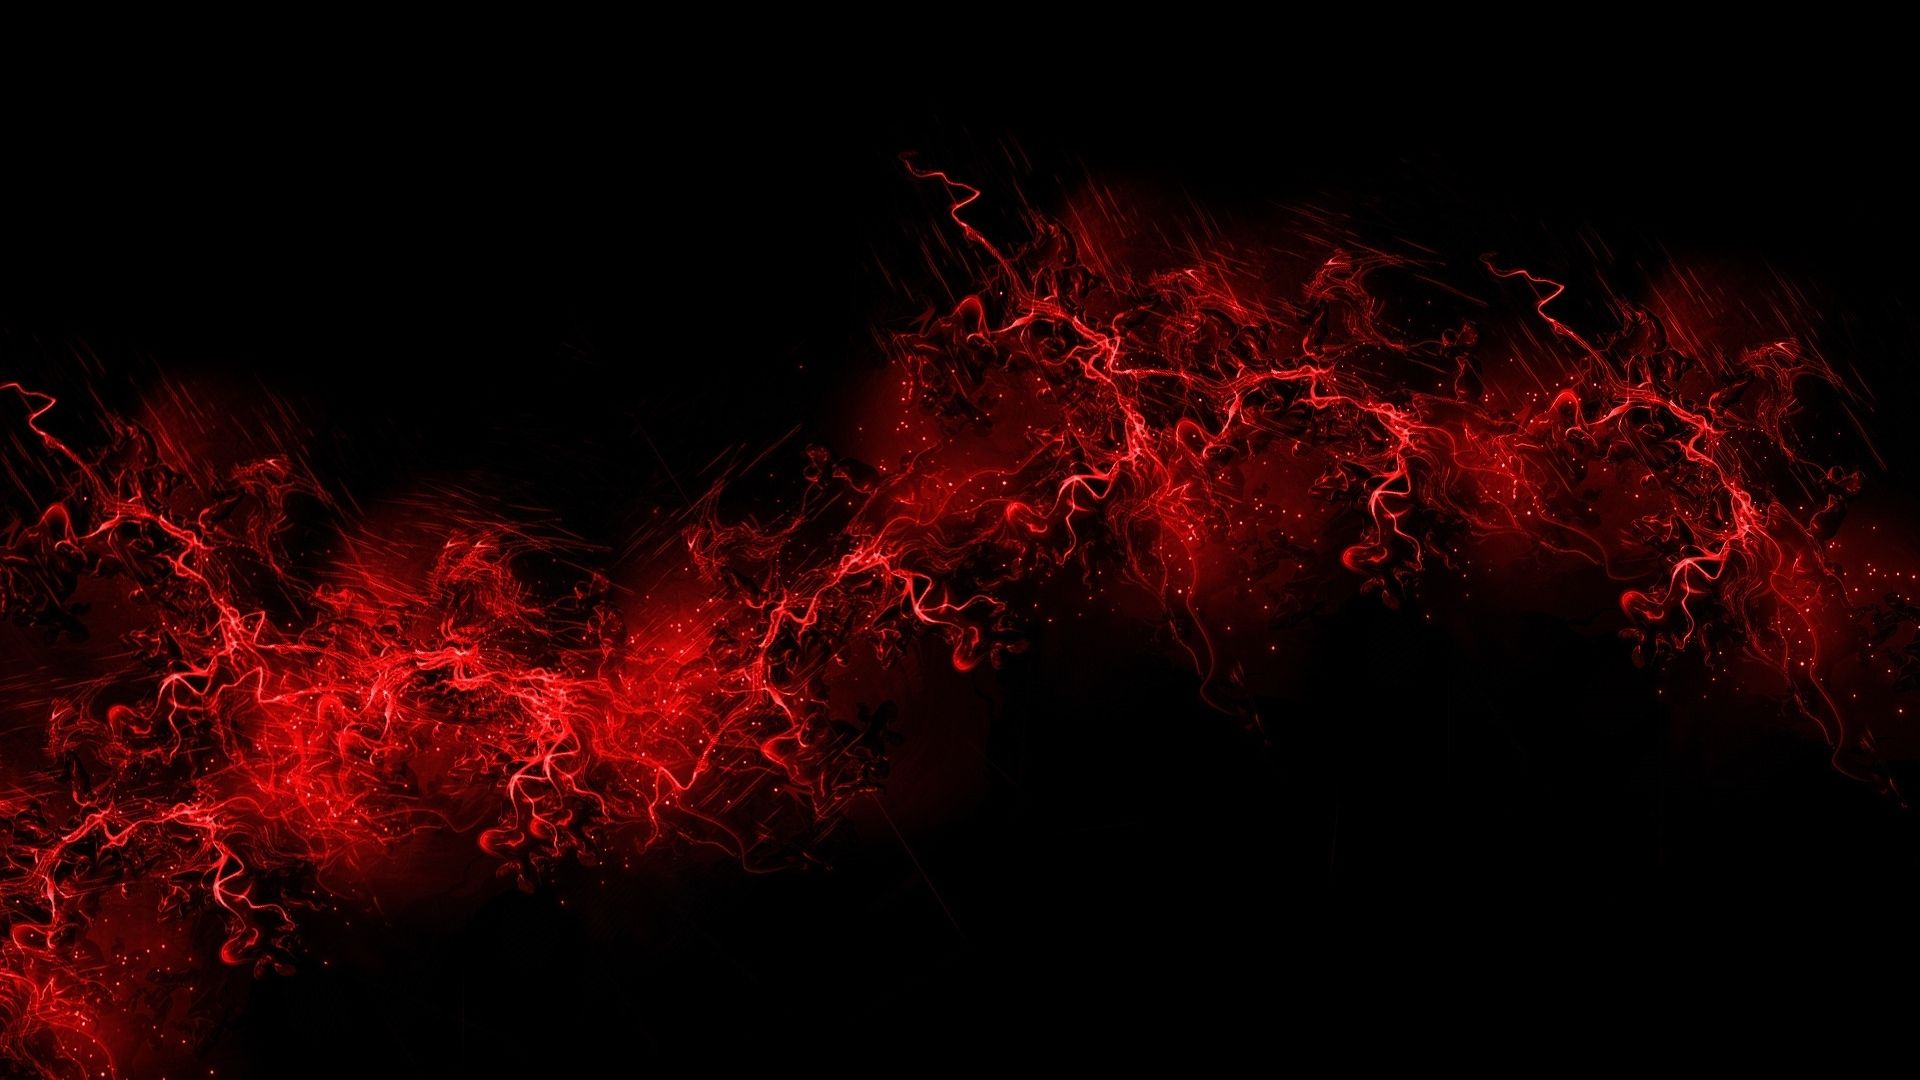 Red Black Desktop Wallpaper Full HD 1080p For Pc